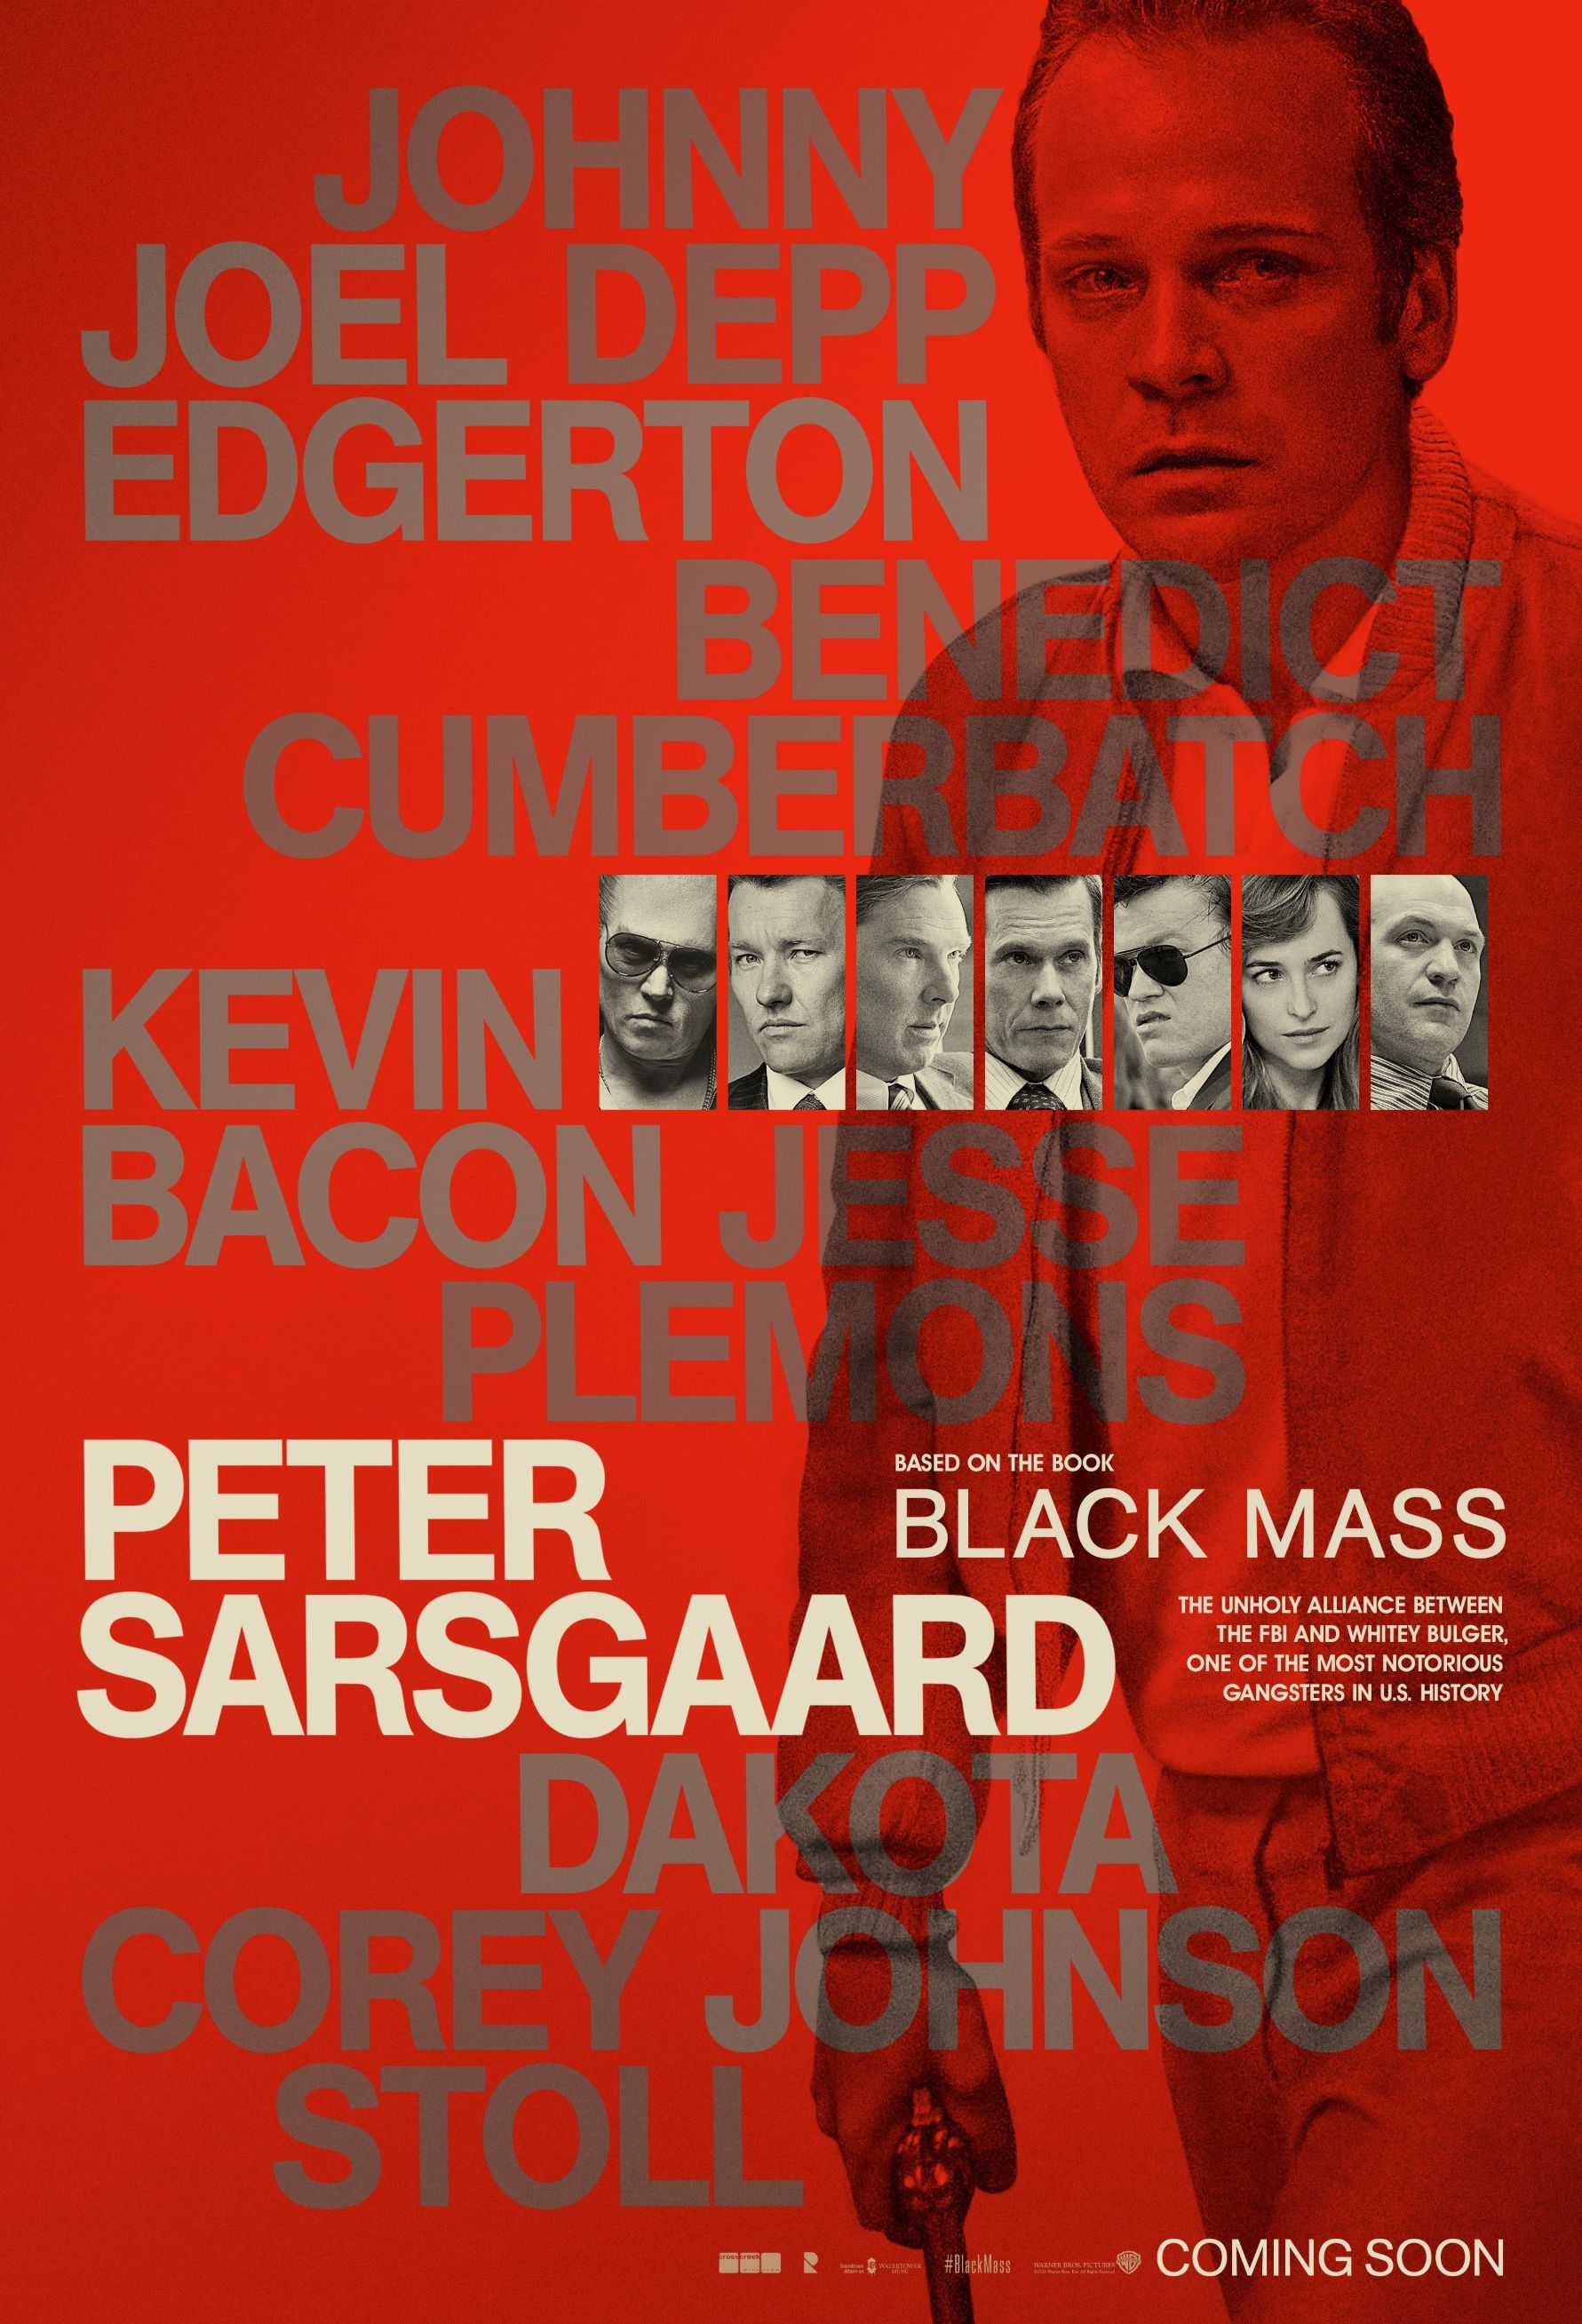 Peter Sarsgaard, Black Mass Poster